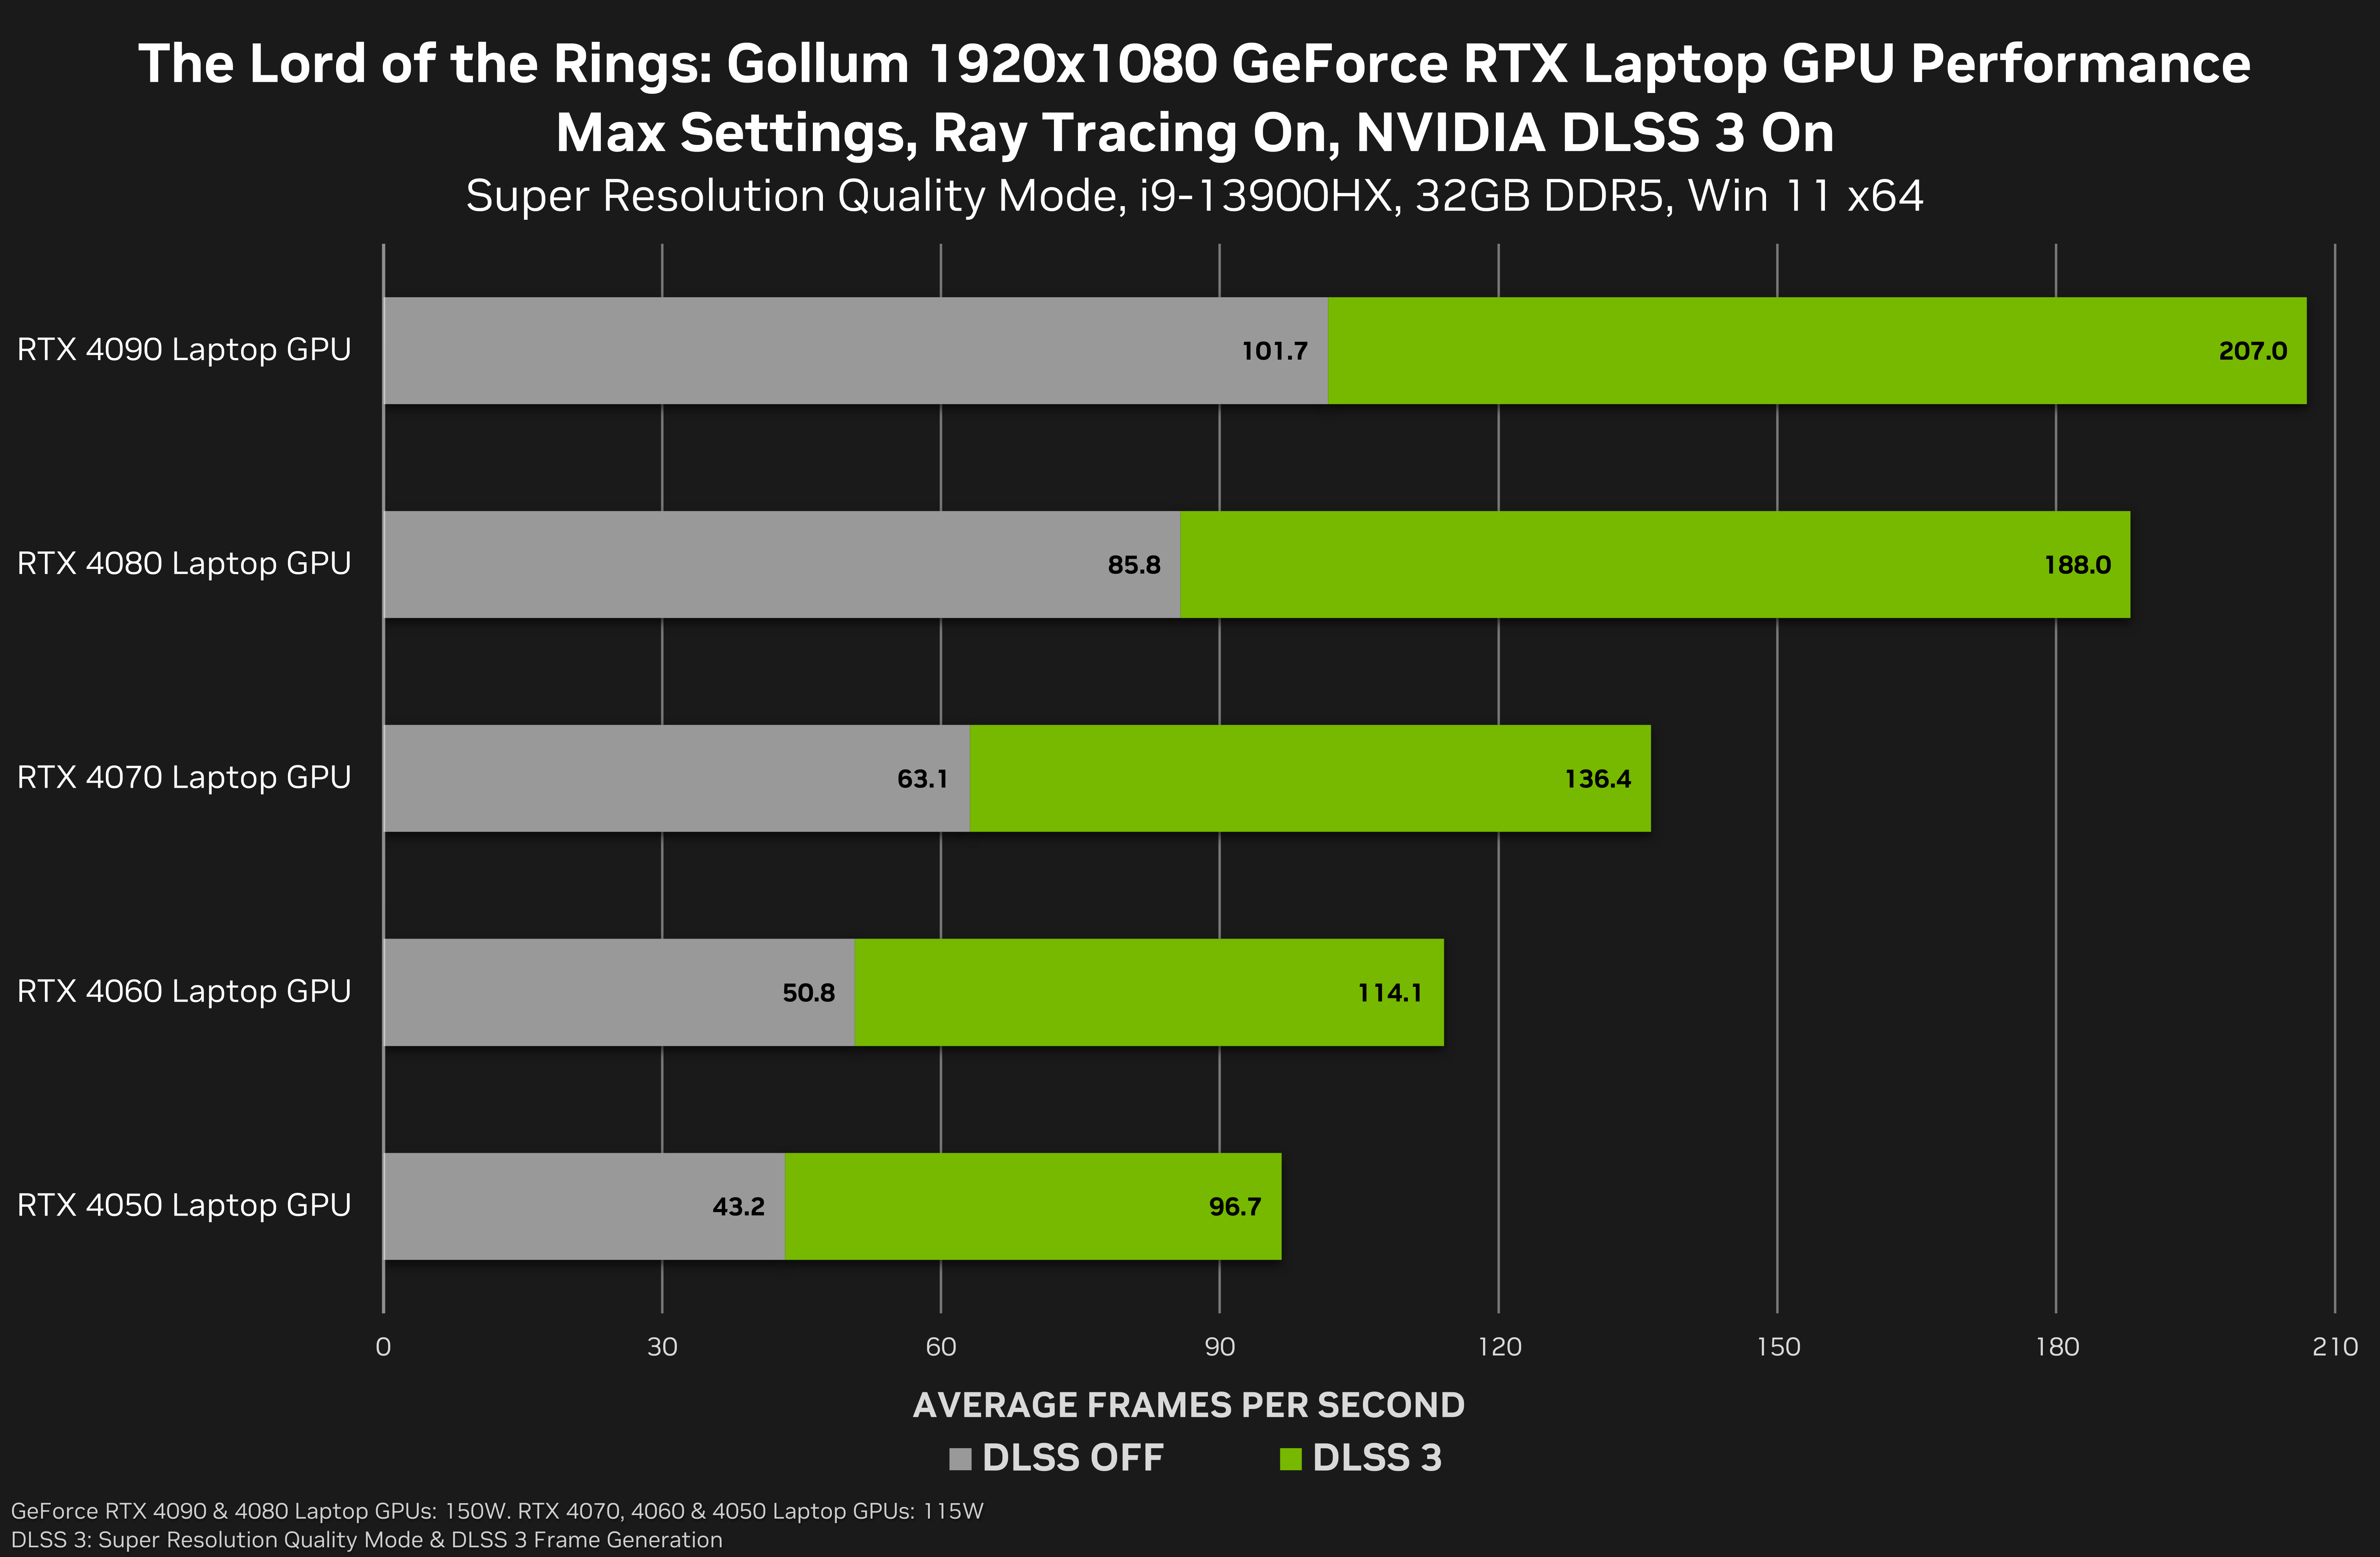 GeForce RTX 4060 Ti vs. RTX 3060 Ti: 40 Game Benchmark